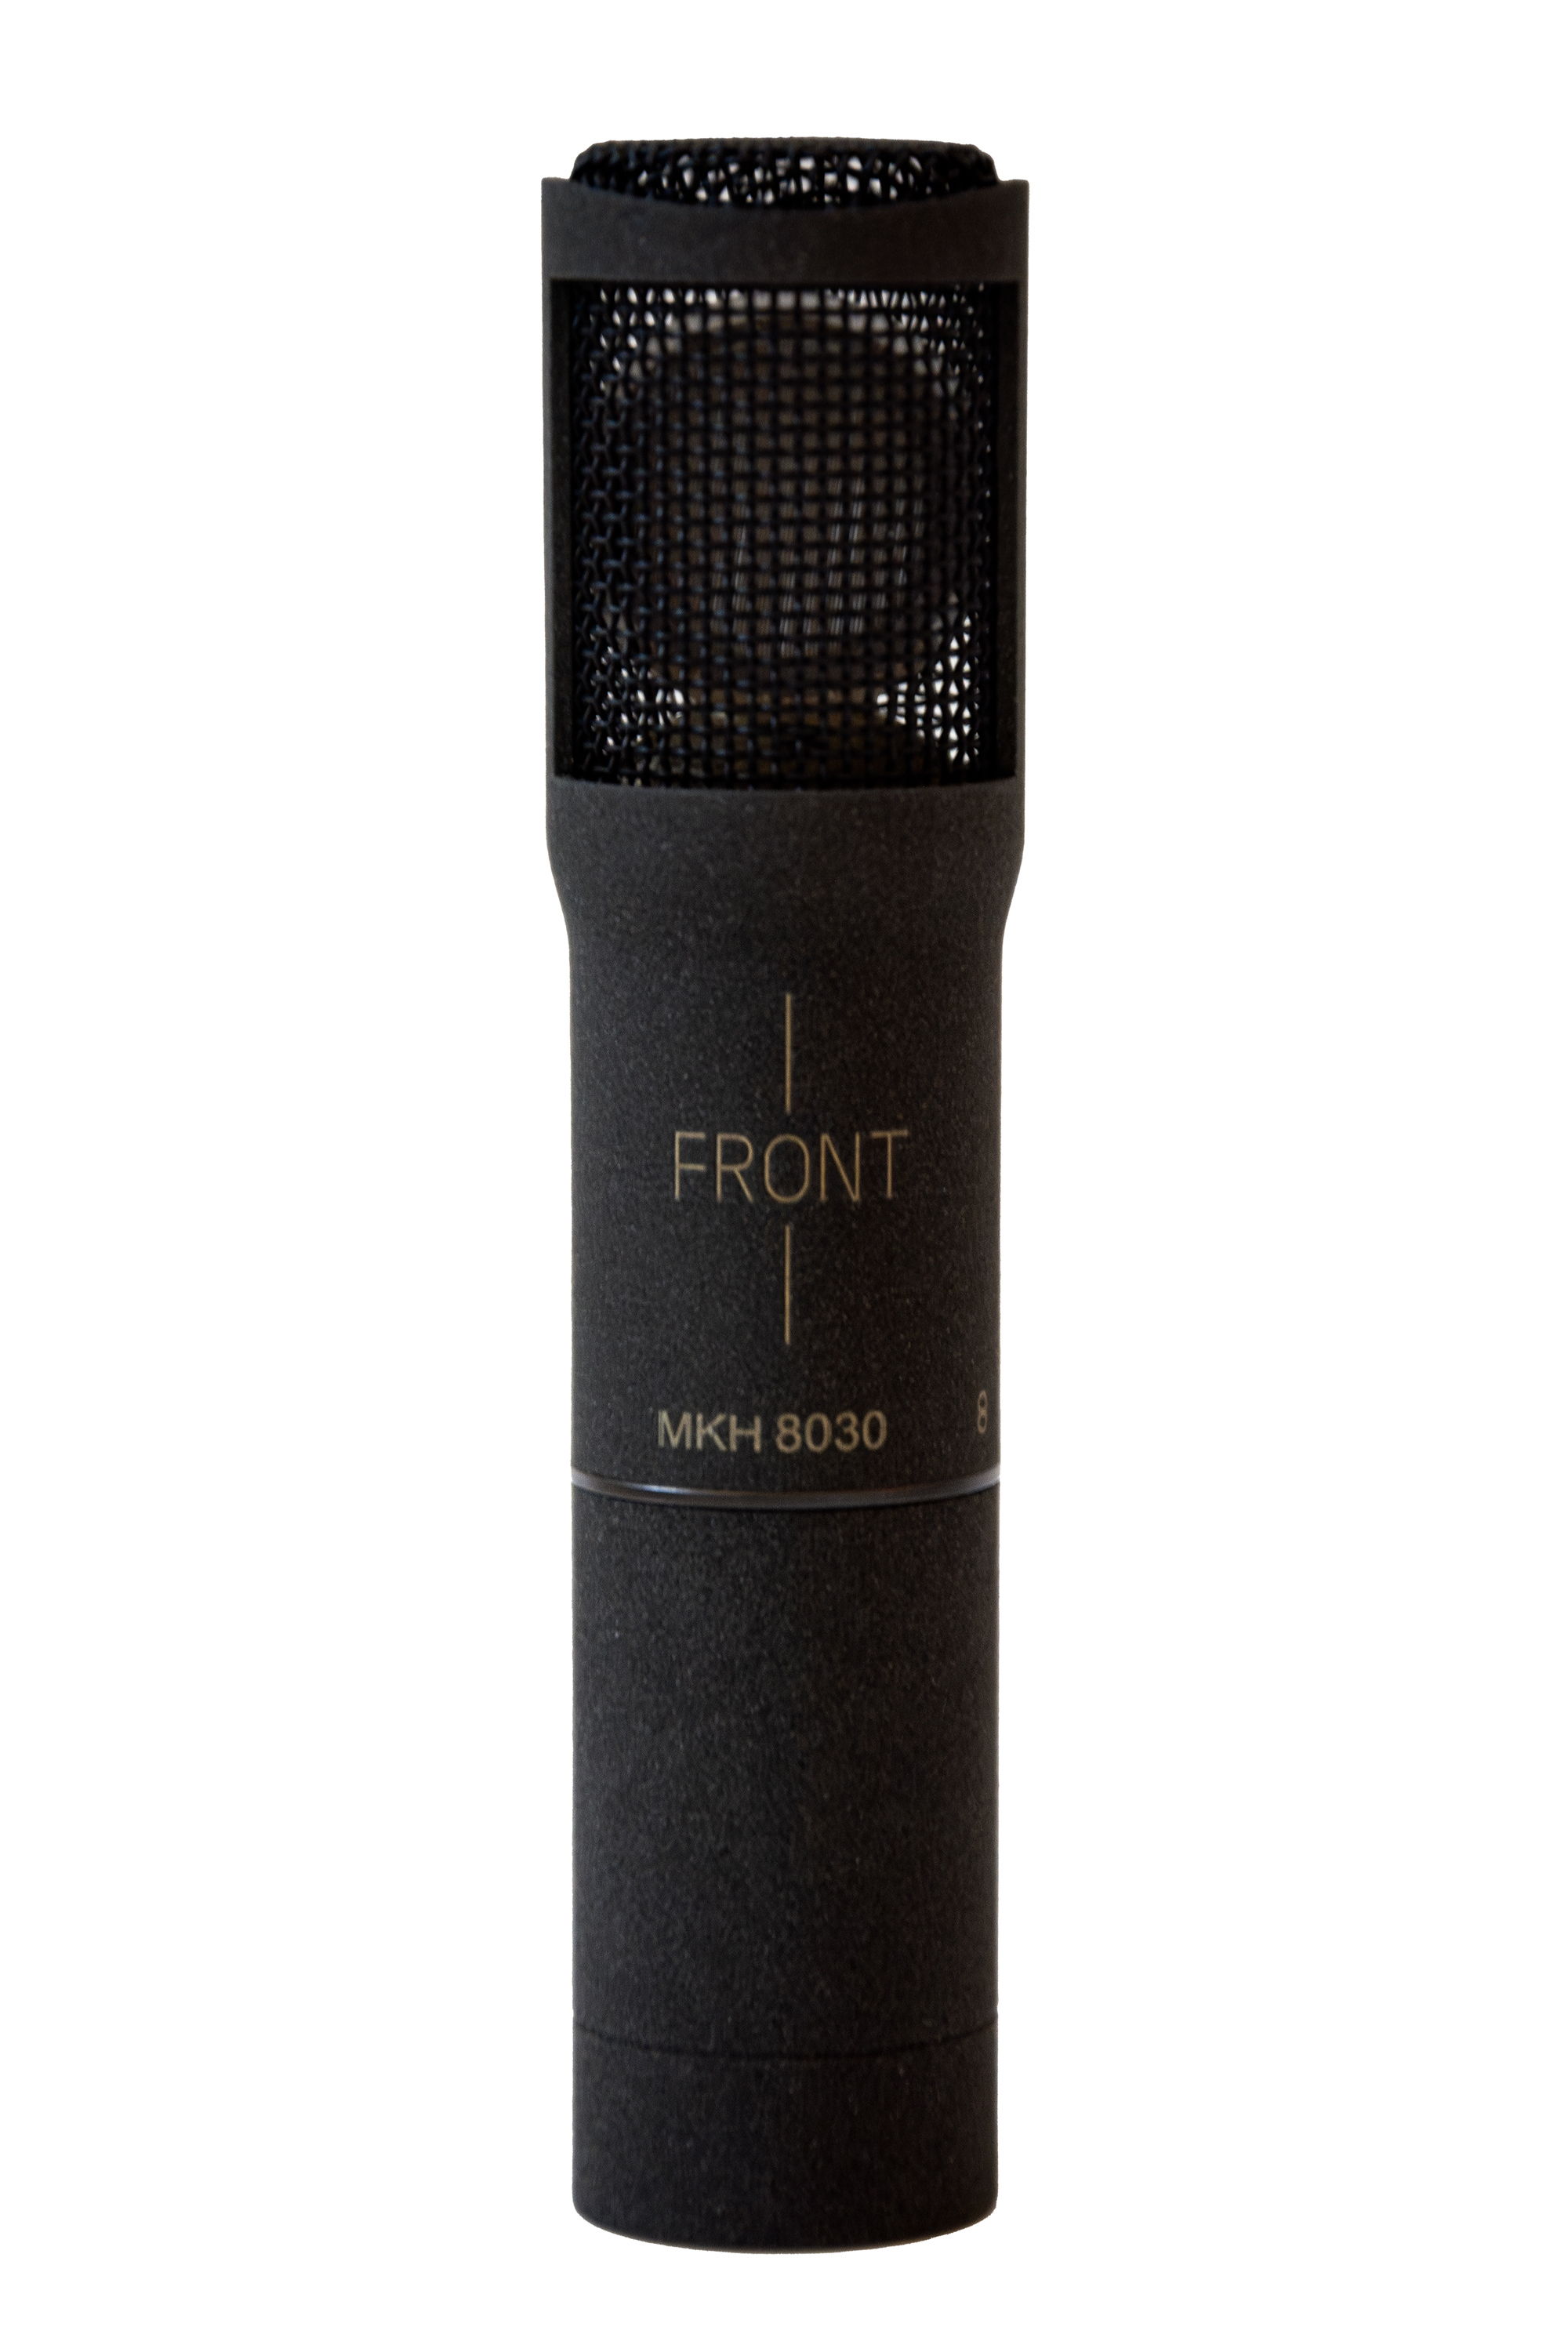 Mikrofon kondensor RF figure-of-eight MKH 8030 ini sangatlah ringkas dengan diameter 19/21 mm dan panjang 93 mm termasuk modul XLR (hanya foto preview)